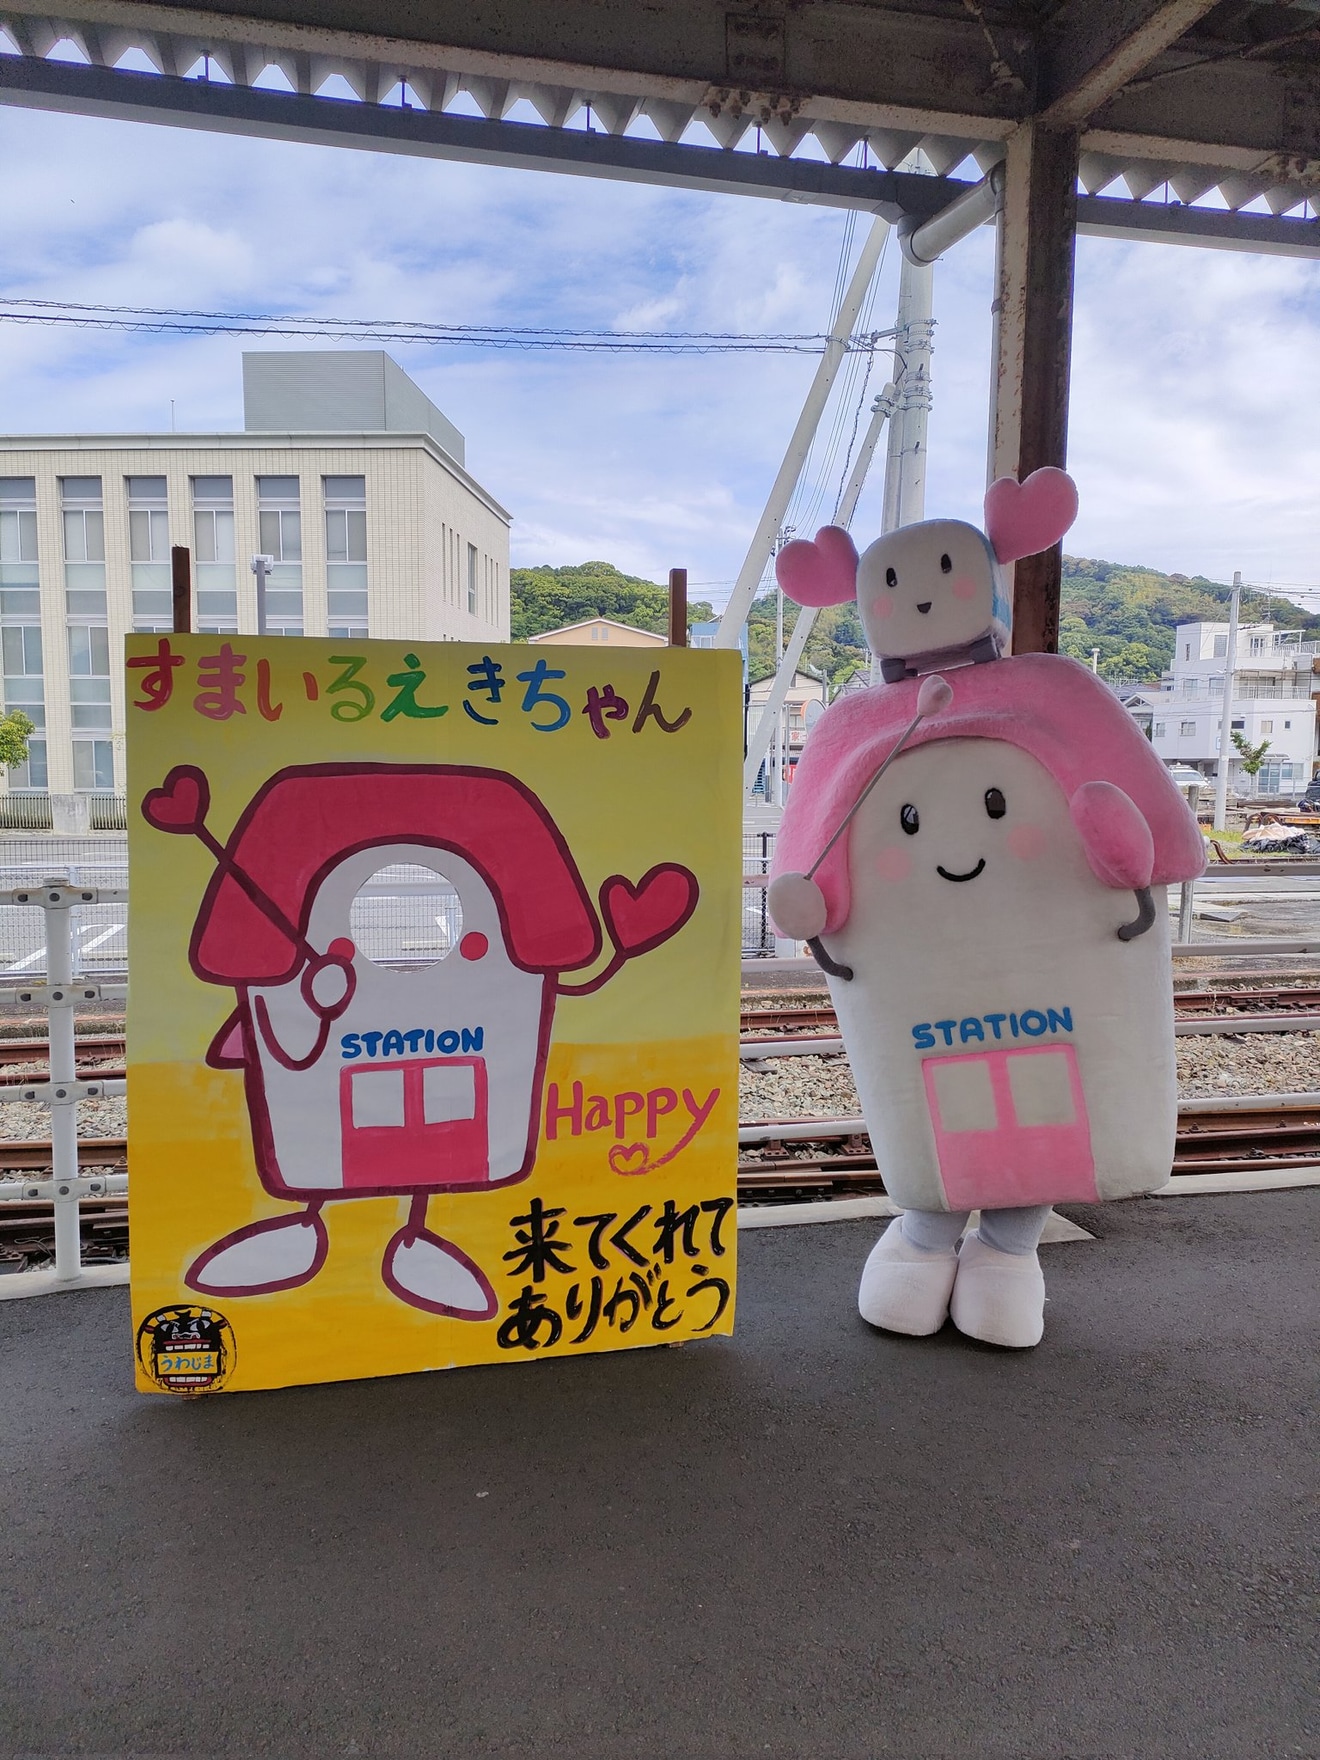 【JR四】「第2回 予土線 Fun Fun 祭り」の開催の拡大写真